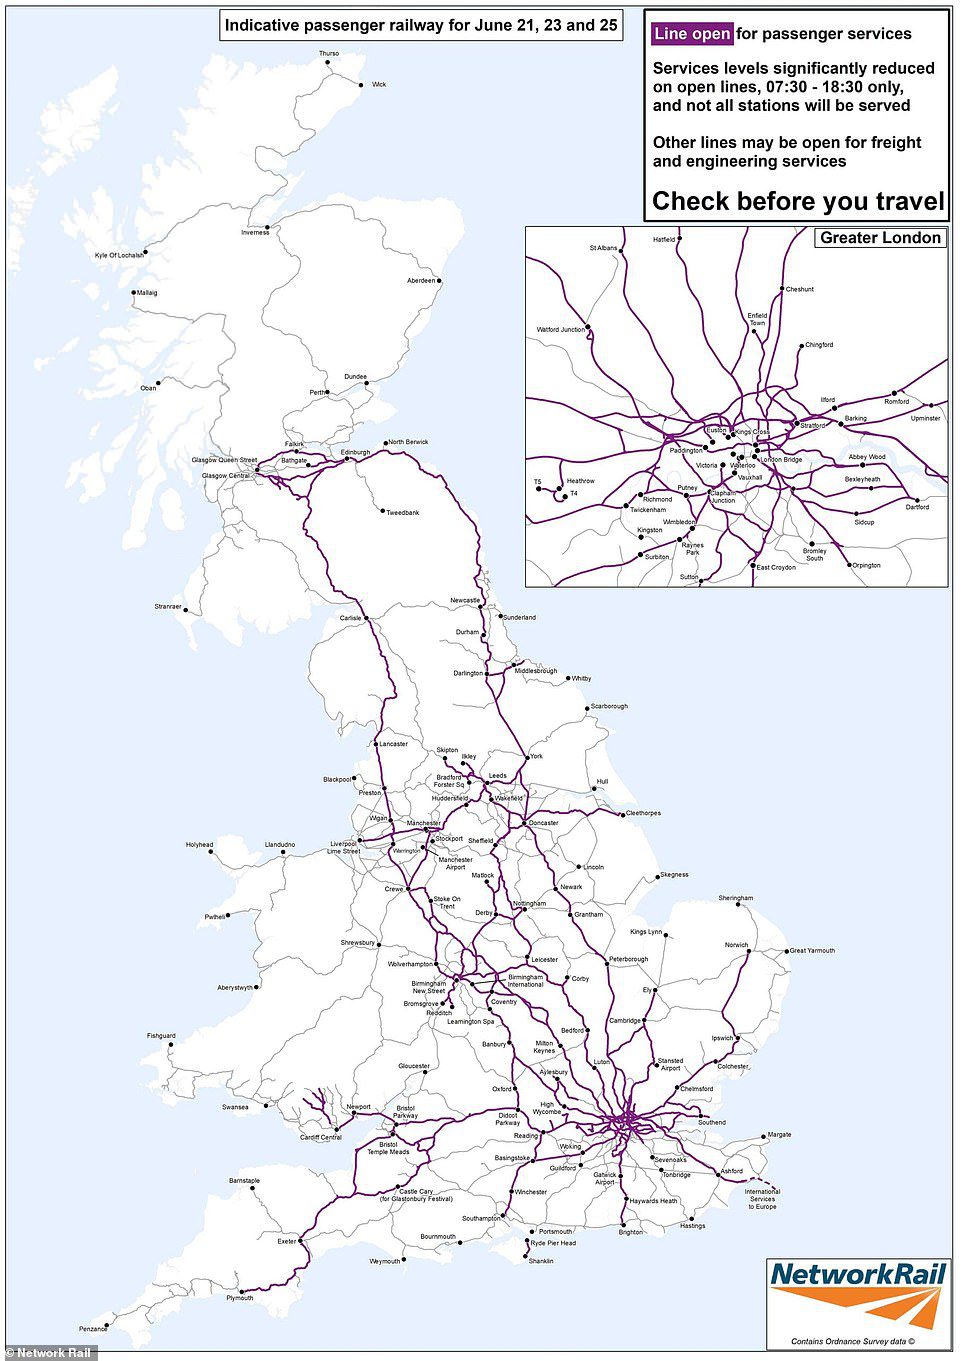 Network Rail nie opublikowało jeszcze mapy usług 27 lipca – ale tak właśnie było przed strajkiem RMT w zeszłym miesiącu